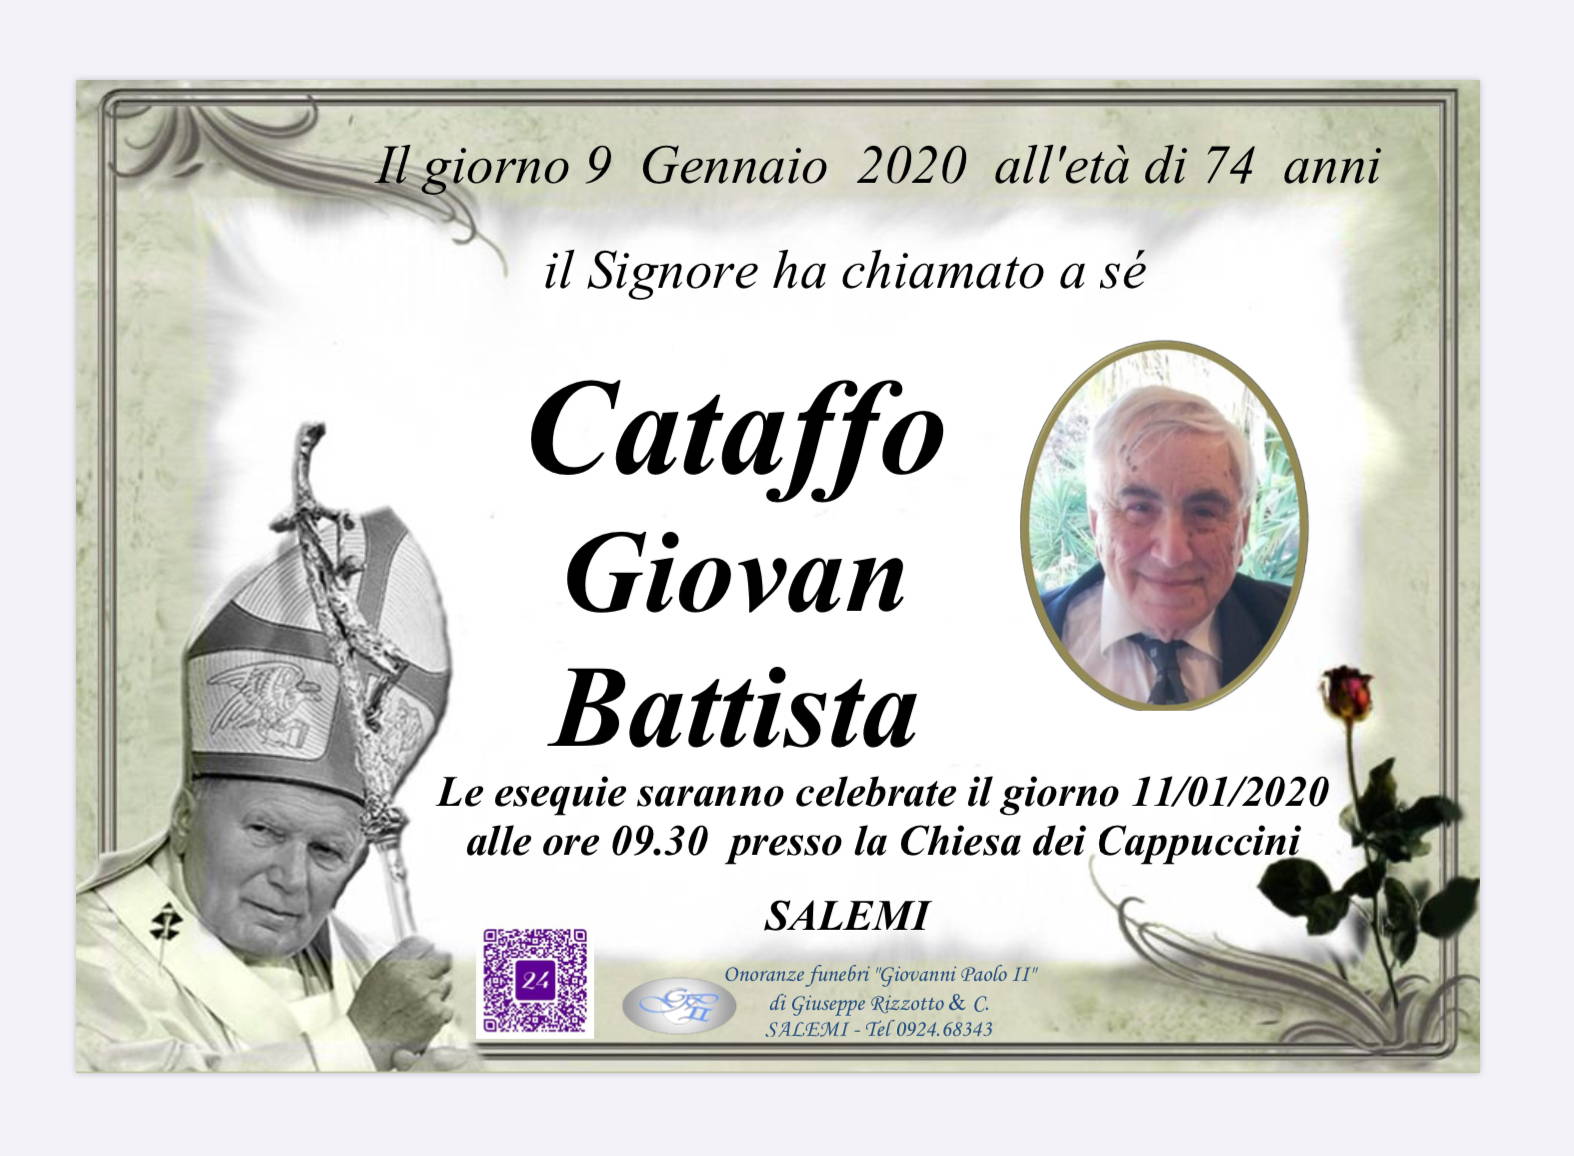 Giovan Battista Cataffo